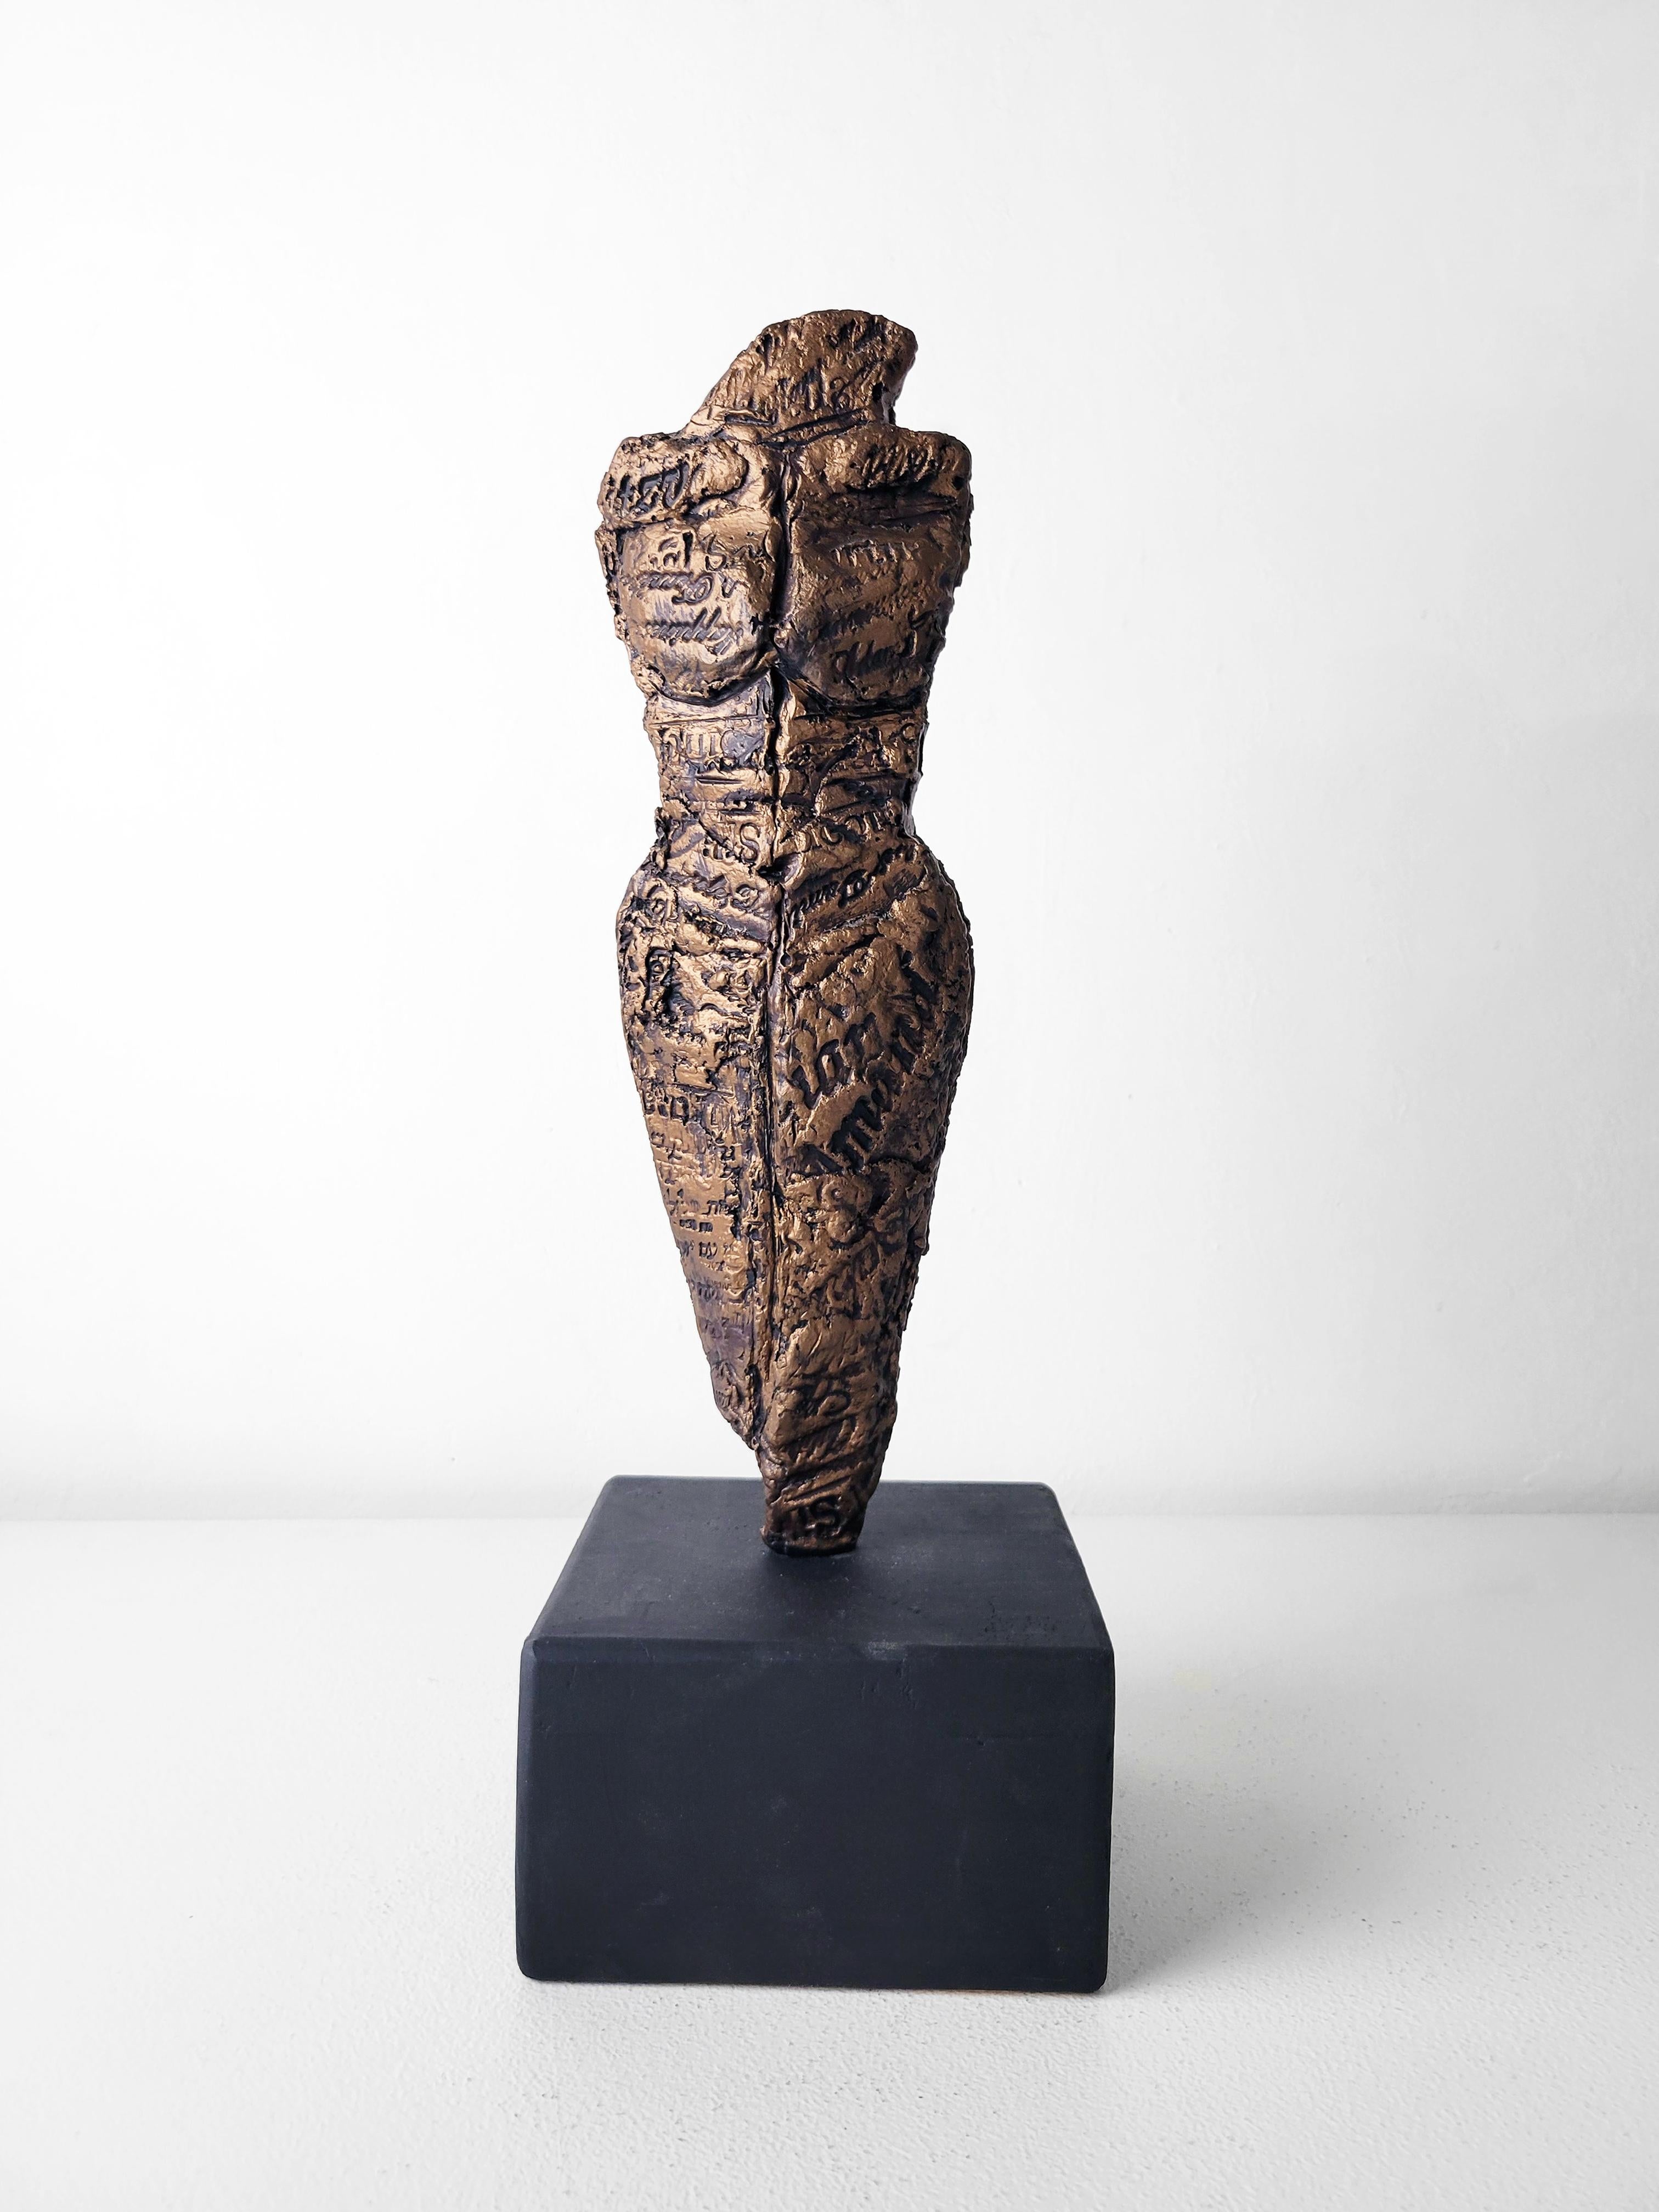 Diese Skulptur aus der Serie "Knights of Protection" von Linda Stein fungiert sowohl als Verteidiger im Kampf als auch als Symbol des Pazifismus. Die Skulptur ist aus Metallharz, Holz und gemischten Medien gefertigt.

Steins Werke befinden sich in